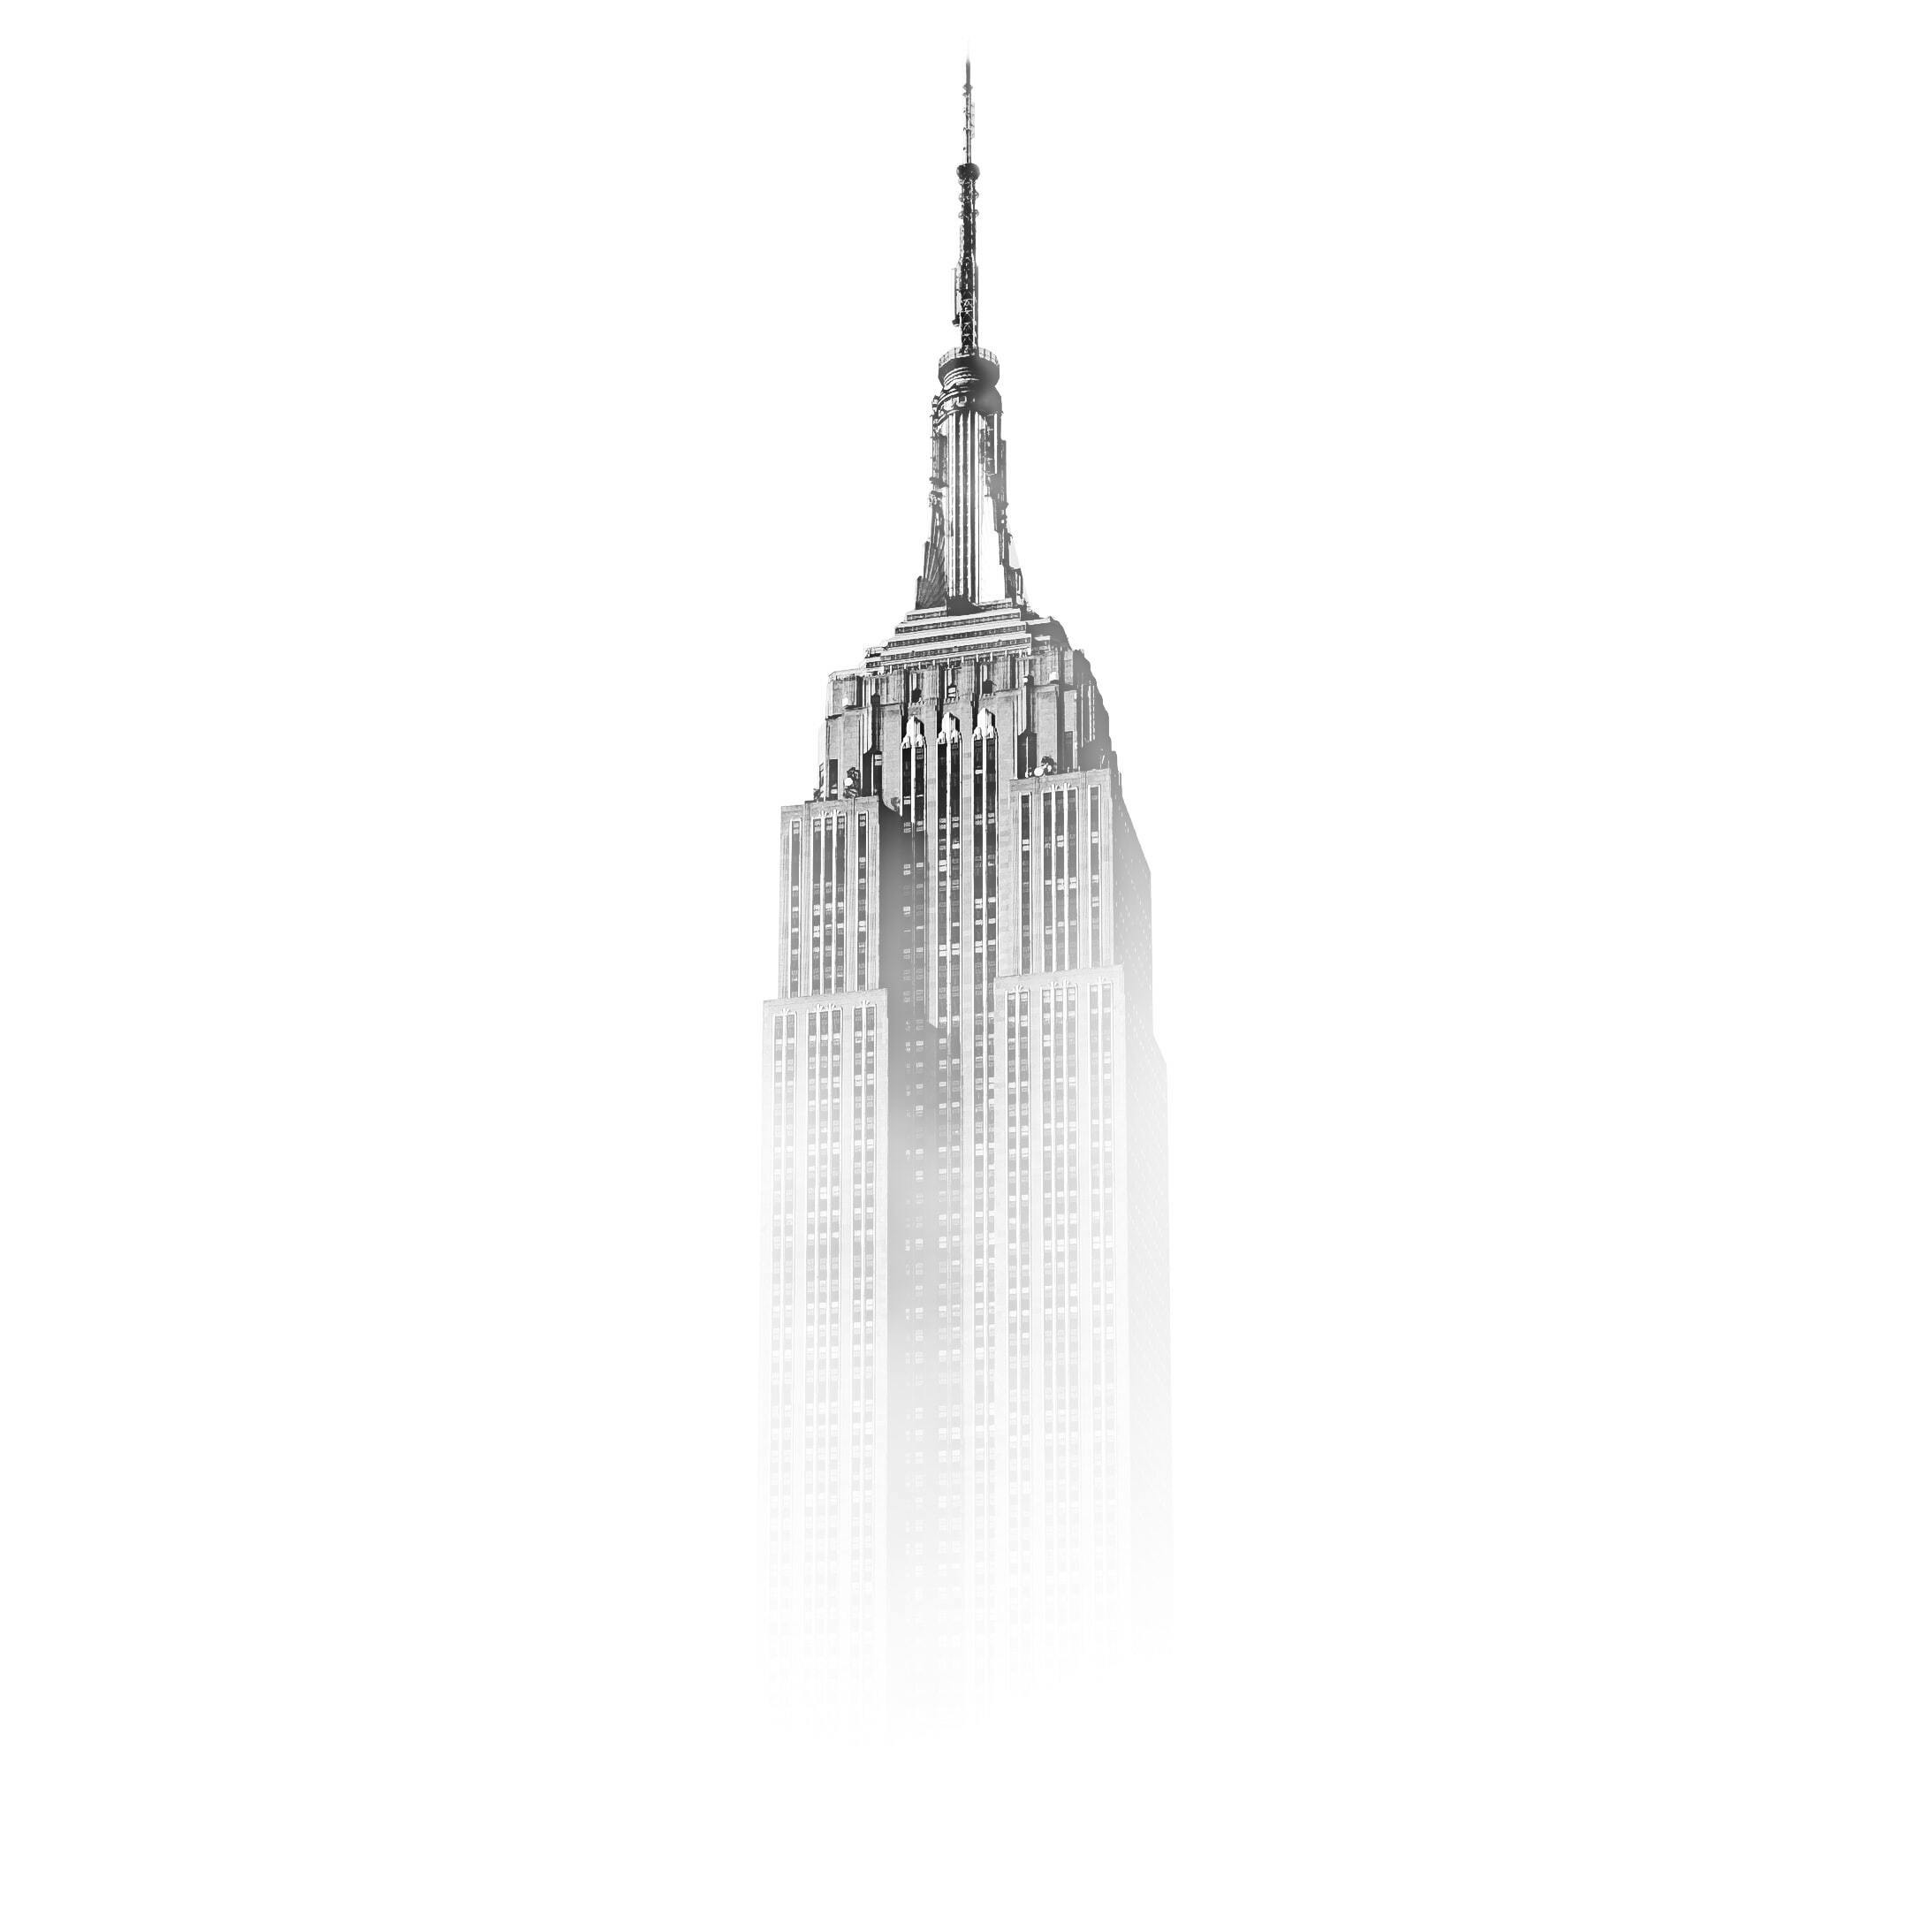 Empire State Building ritoccato con Photoshop